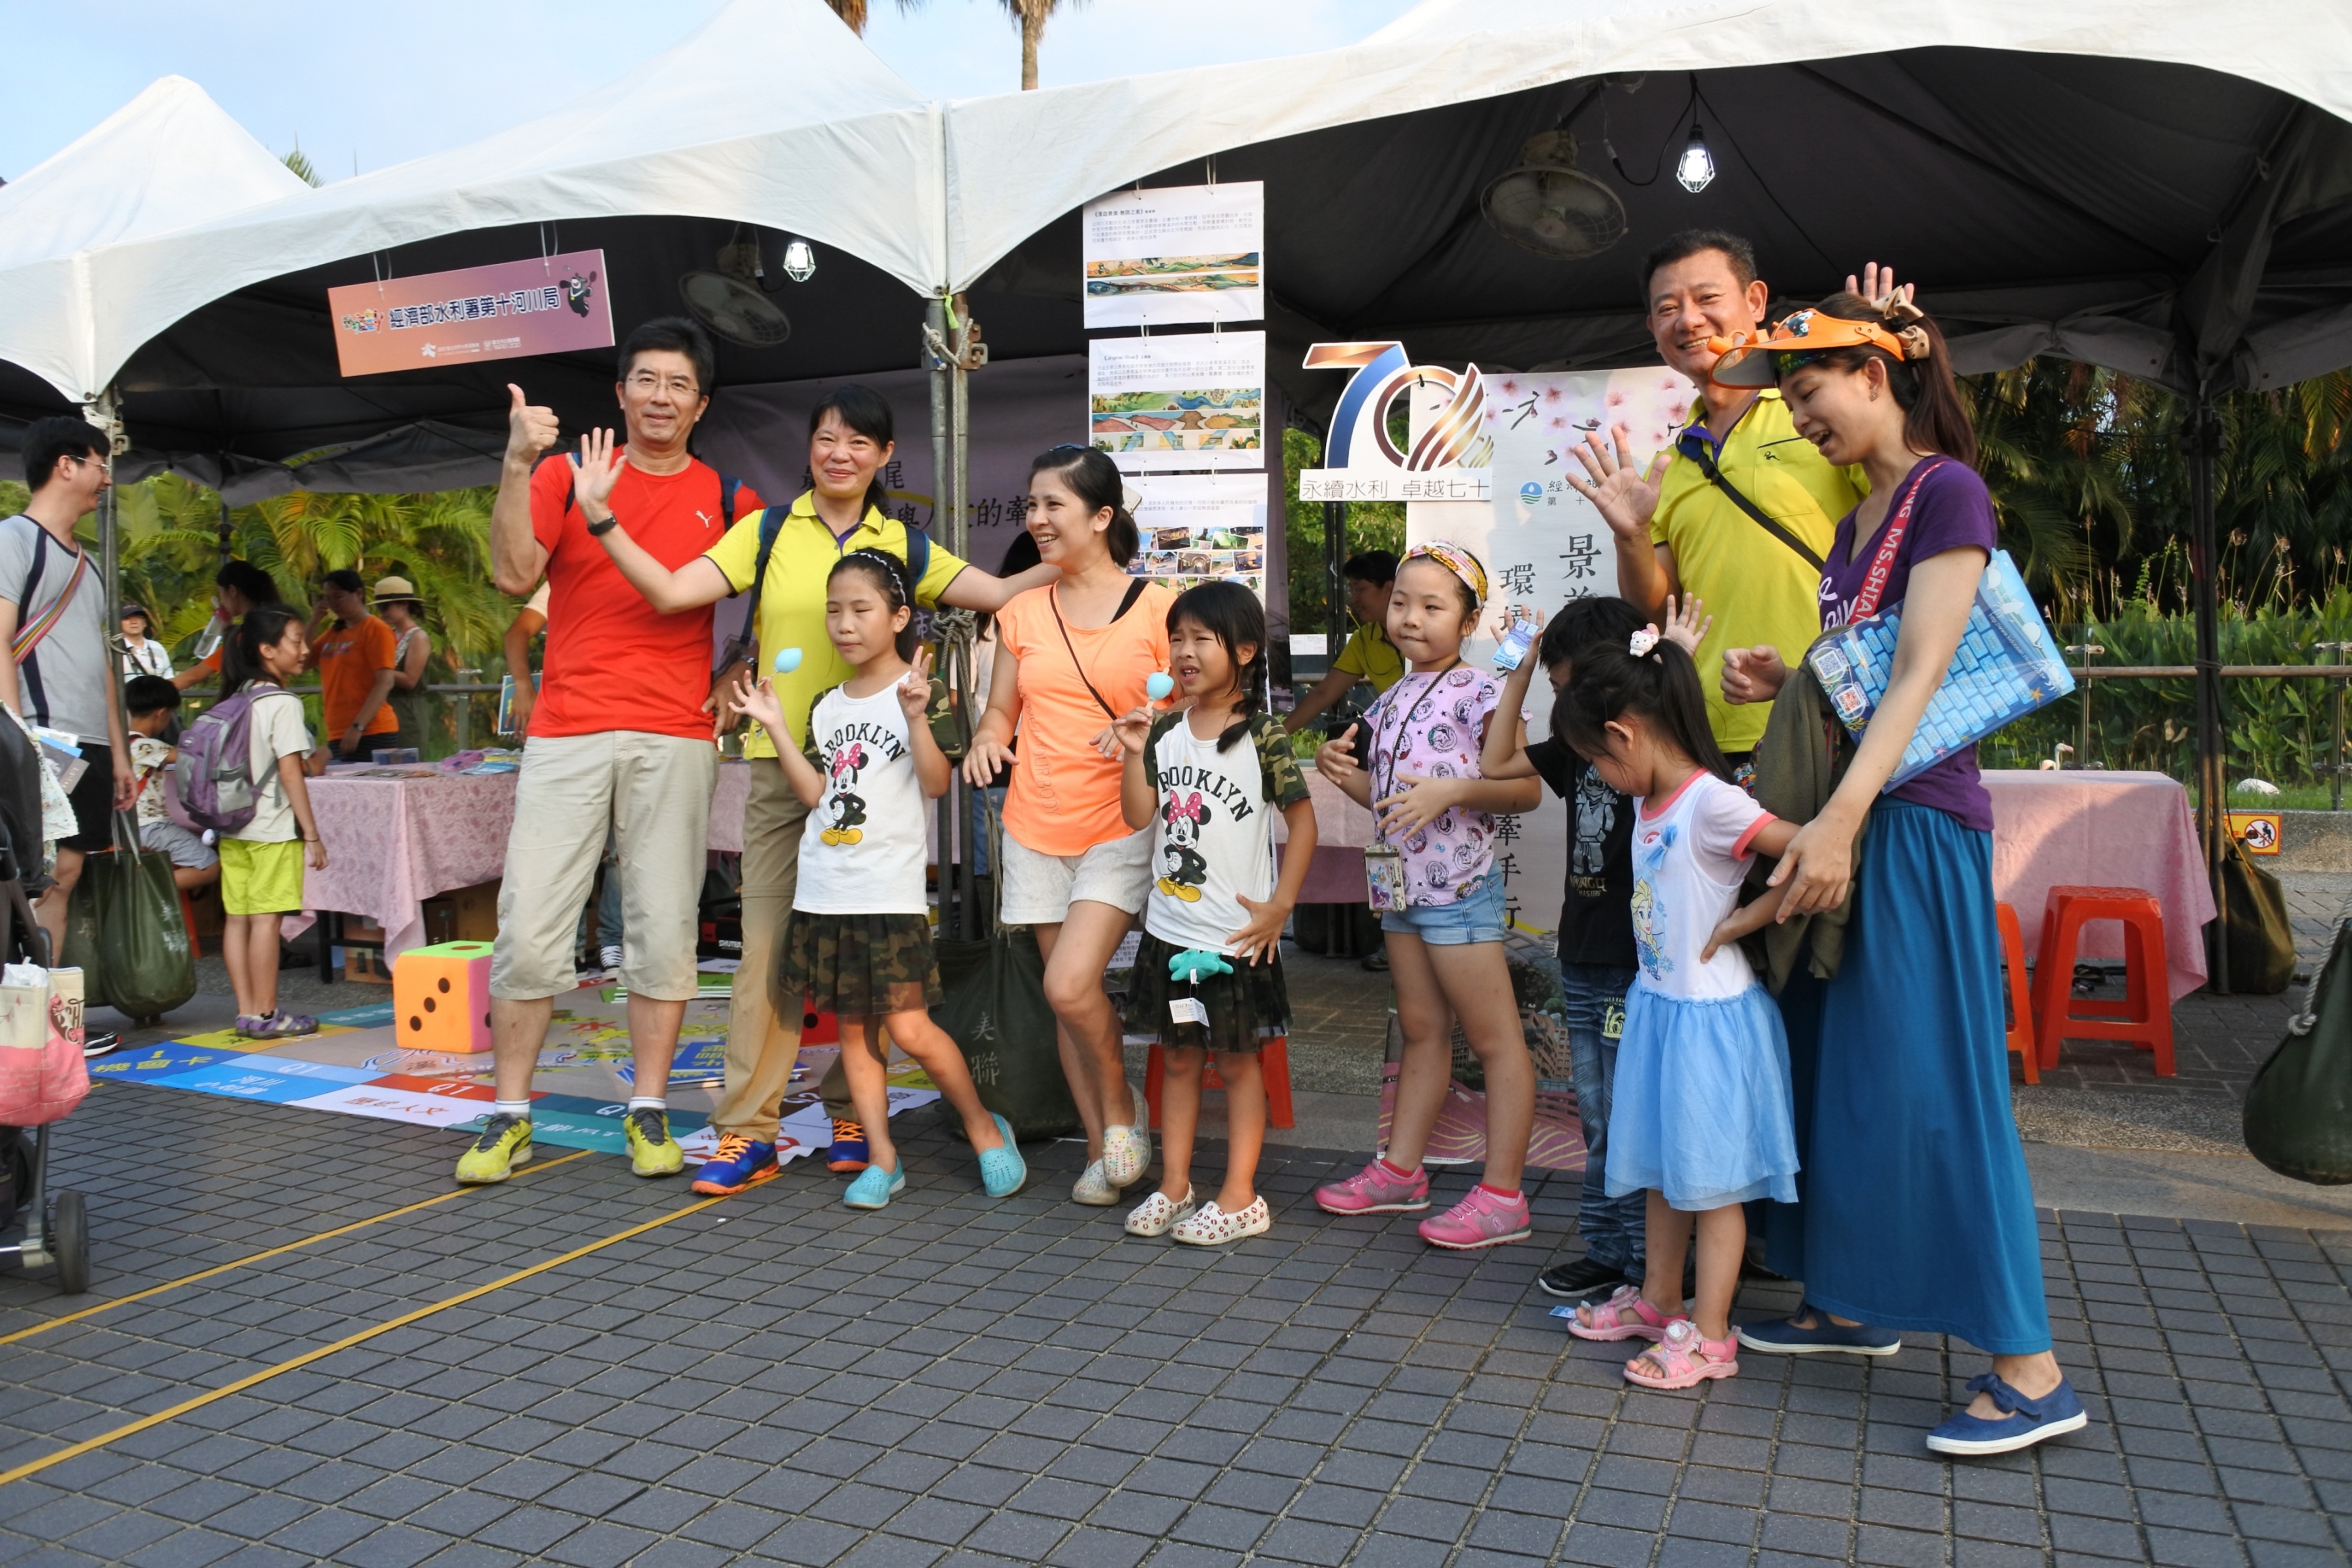 十河局獲邀參加臺北市立動物園盛夏夜趣遊動物園活動情形